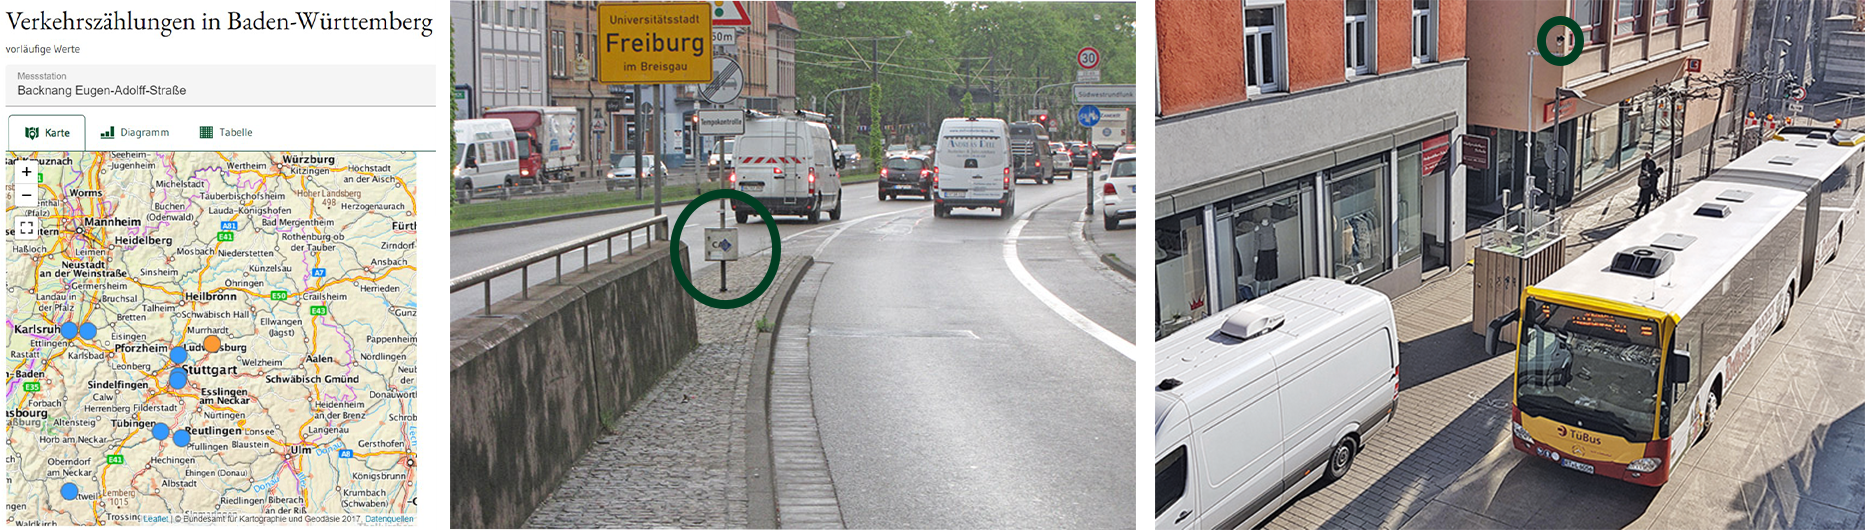 Von Links nach Rechts: Gerät zur Verkehrszählung, Verkehrszählung am Standort Freiburg Schwarzwaldstraße mit Dopplerradarsystem, Verkehrszählungen in Tübingen Mühlstraße mit Infrarotsensor